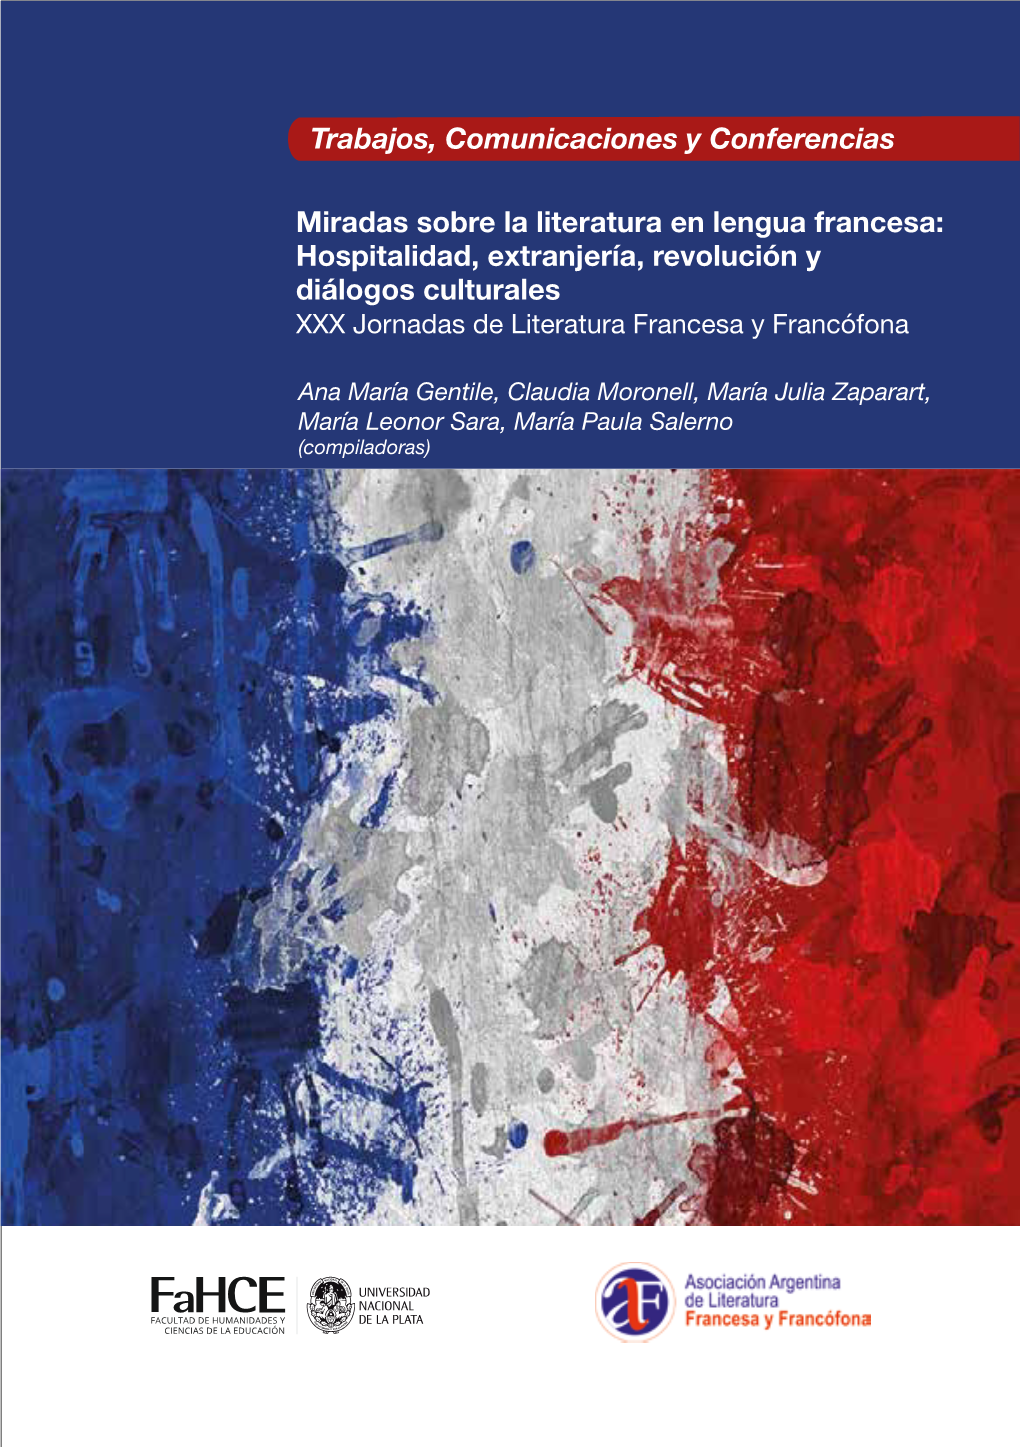 Miradas Sobre La Literatura En Lengua Francesa: Hospitalidad, Extranjería, Revolución Y Diálogos Culturales XXX Jornadas De Literatura Francesa Y Francófona